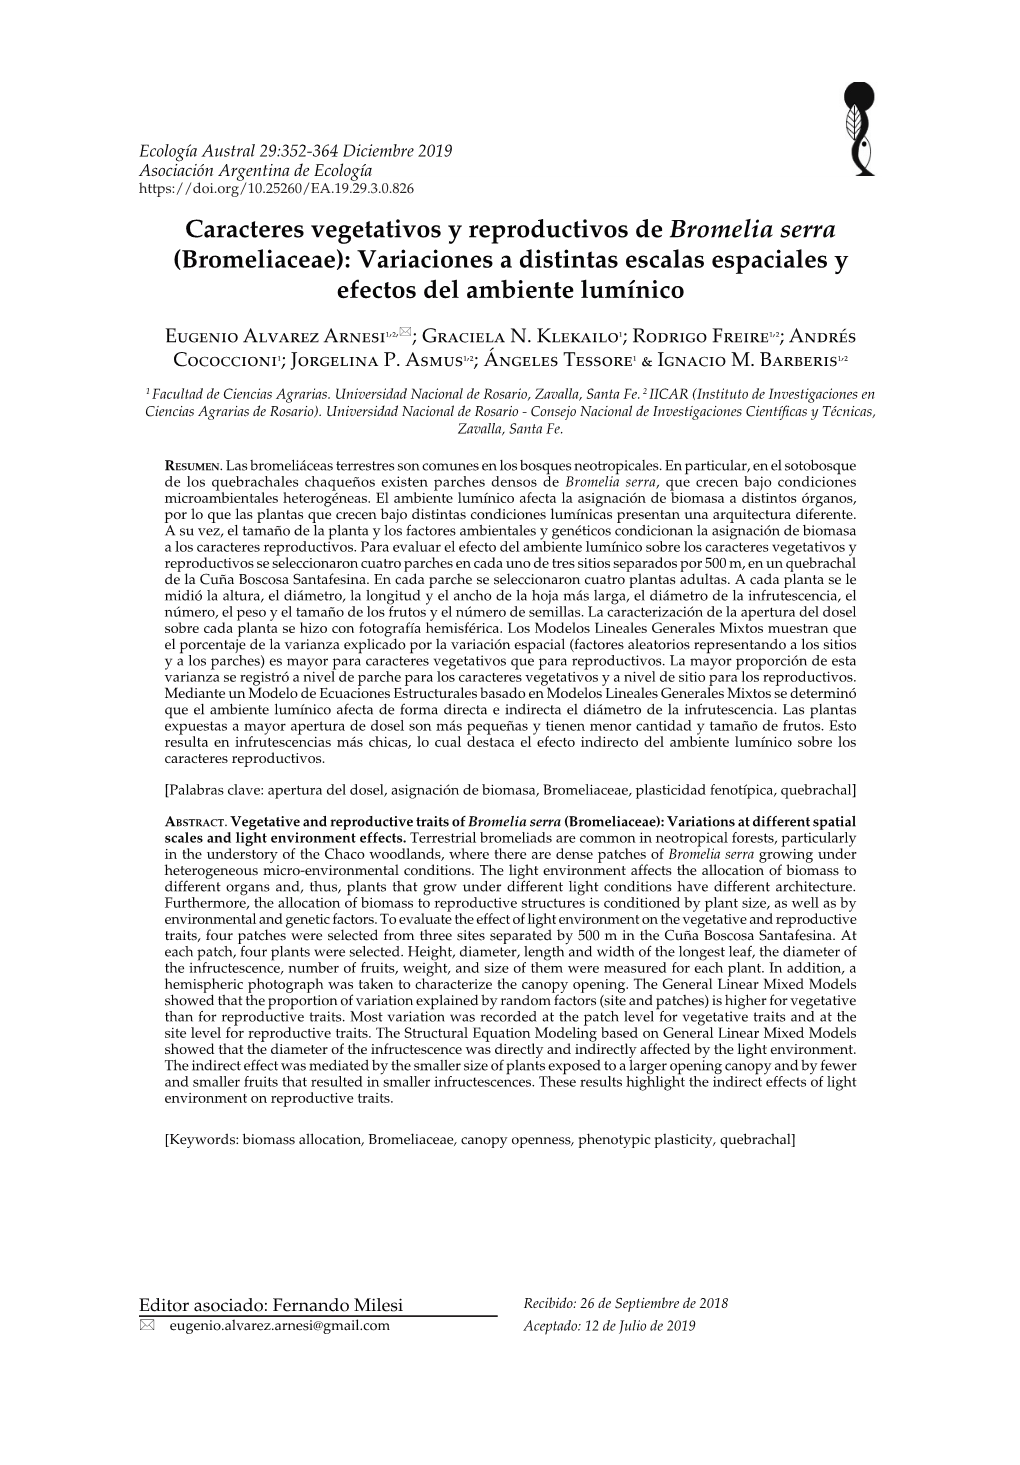 Caracteres Vegetativos Y Reproductivos De Bromelia Serra (Bromeliaceae): Variaciones a Distintas Escalas Espaciales Y Efectos Del Ambiente Lumínico